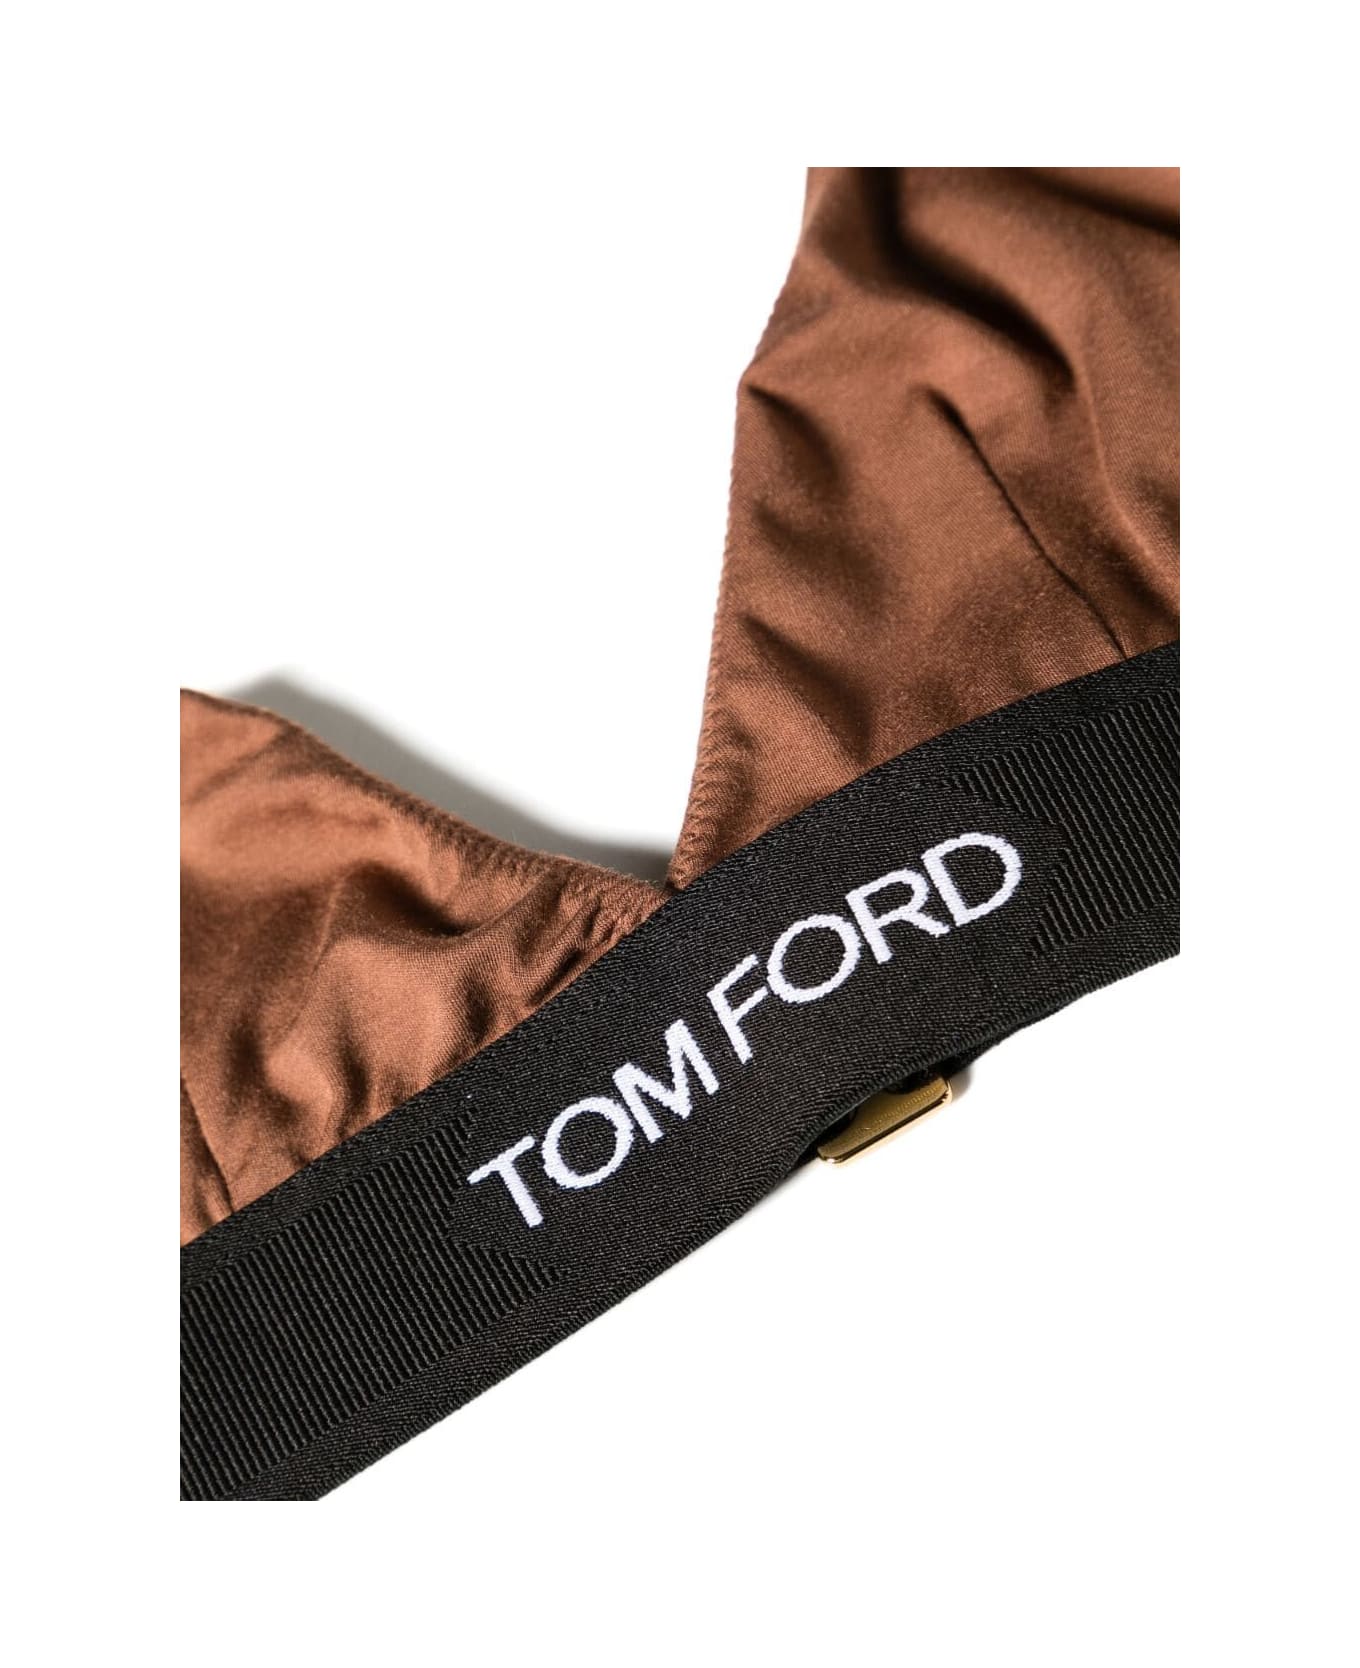 Tom Ford Modal Signature Bra - Cocoa Brown ブラジャー